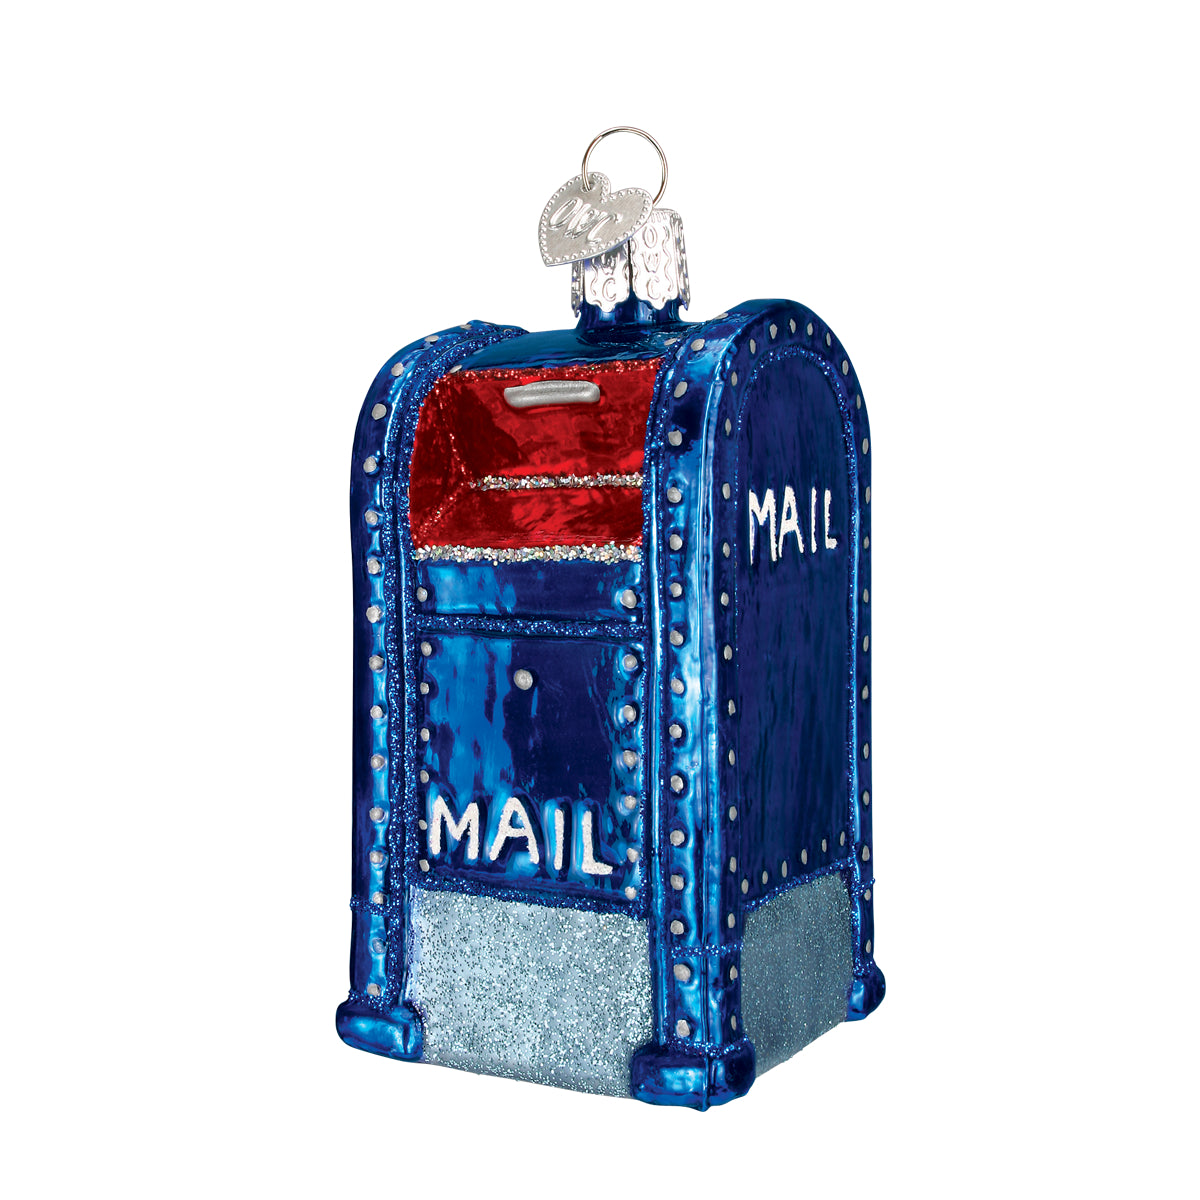 Mail Box Ornament